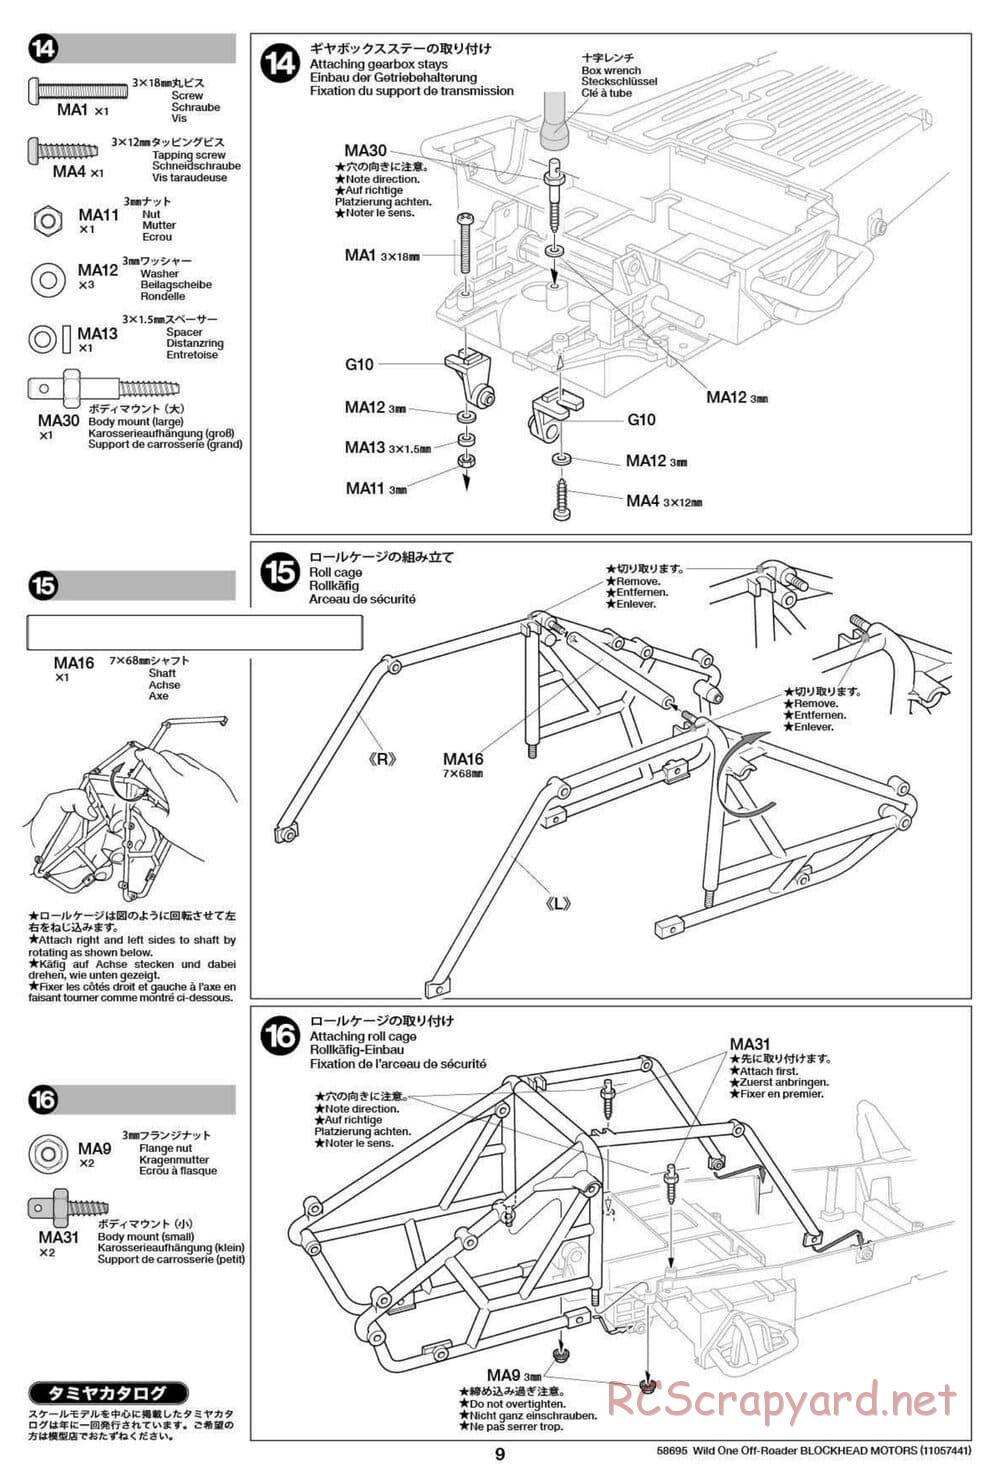 Tamiya - Wild One Off Roader Blockhead Motors - FAV Chassis - Manual - Page 9